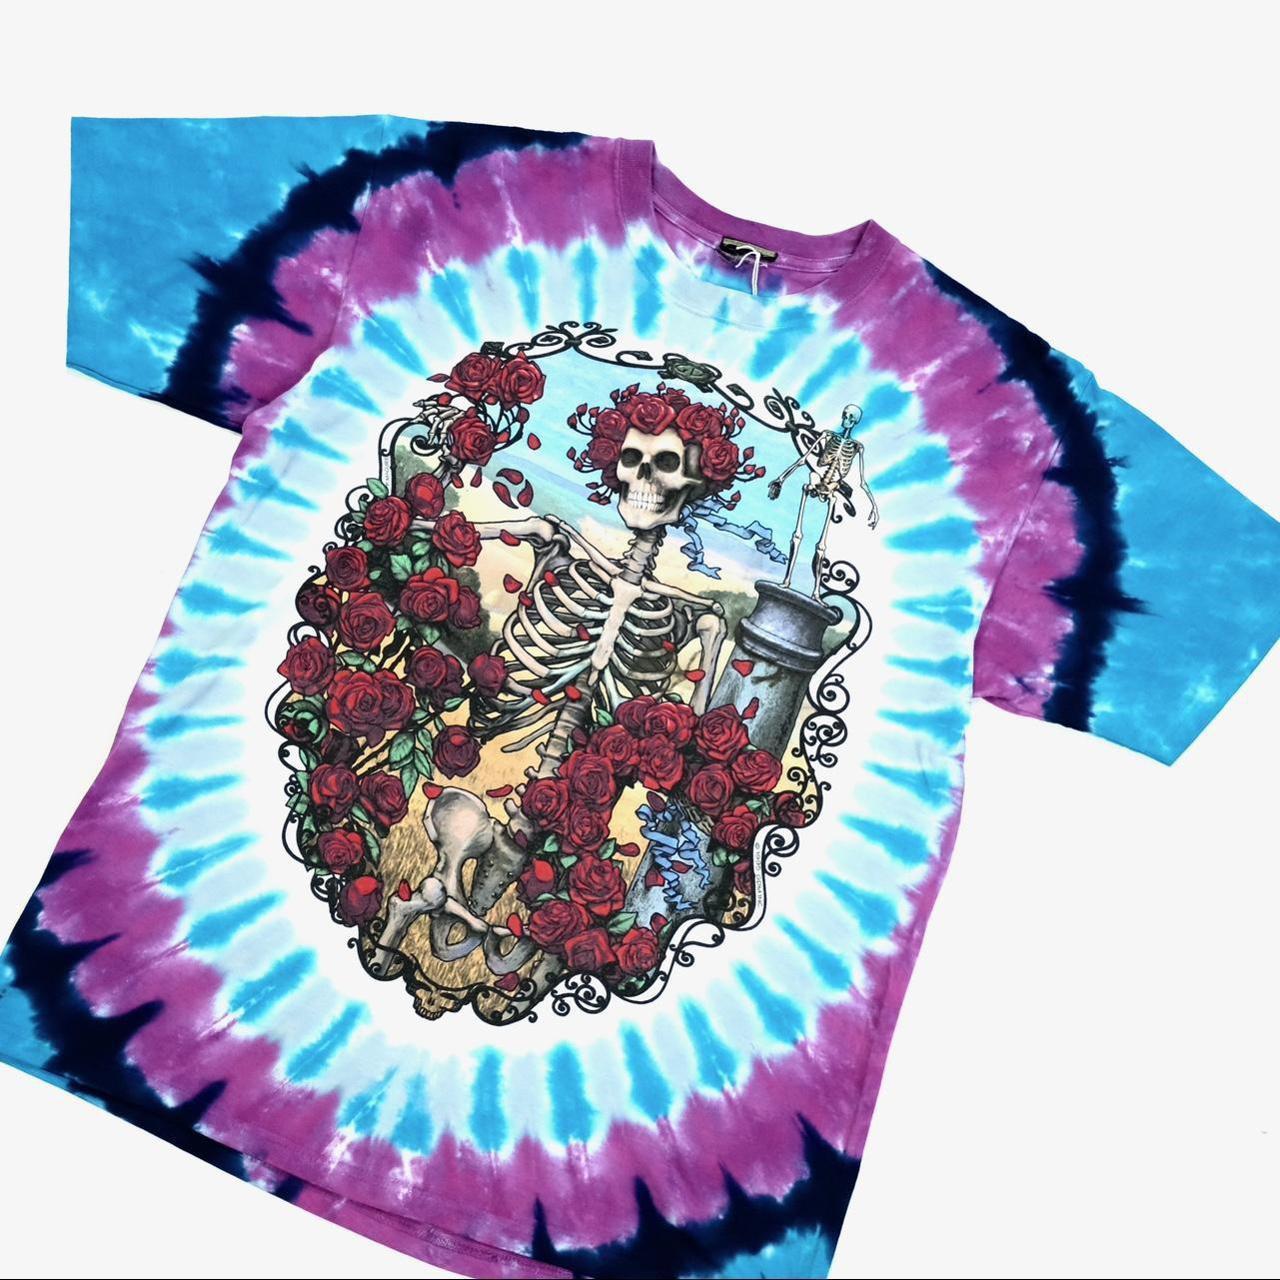 Vintage Grateful Dead tie dye t-shirt